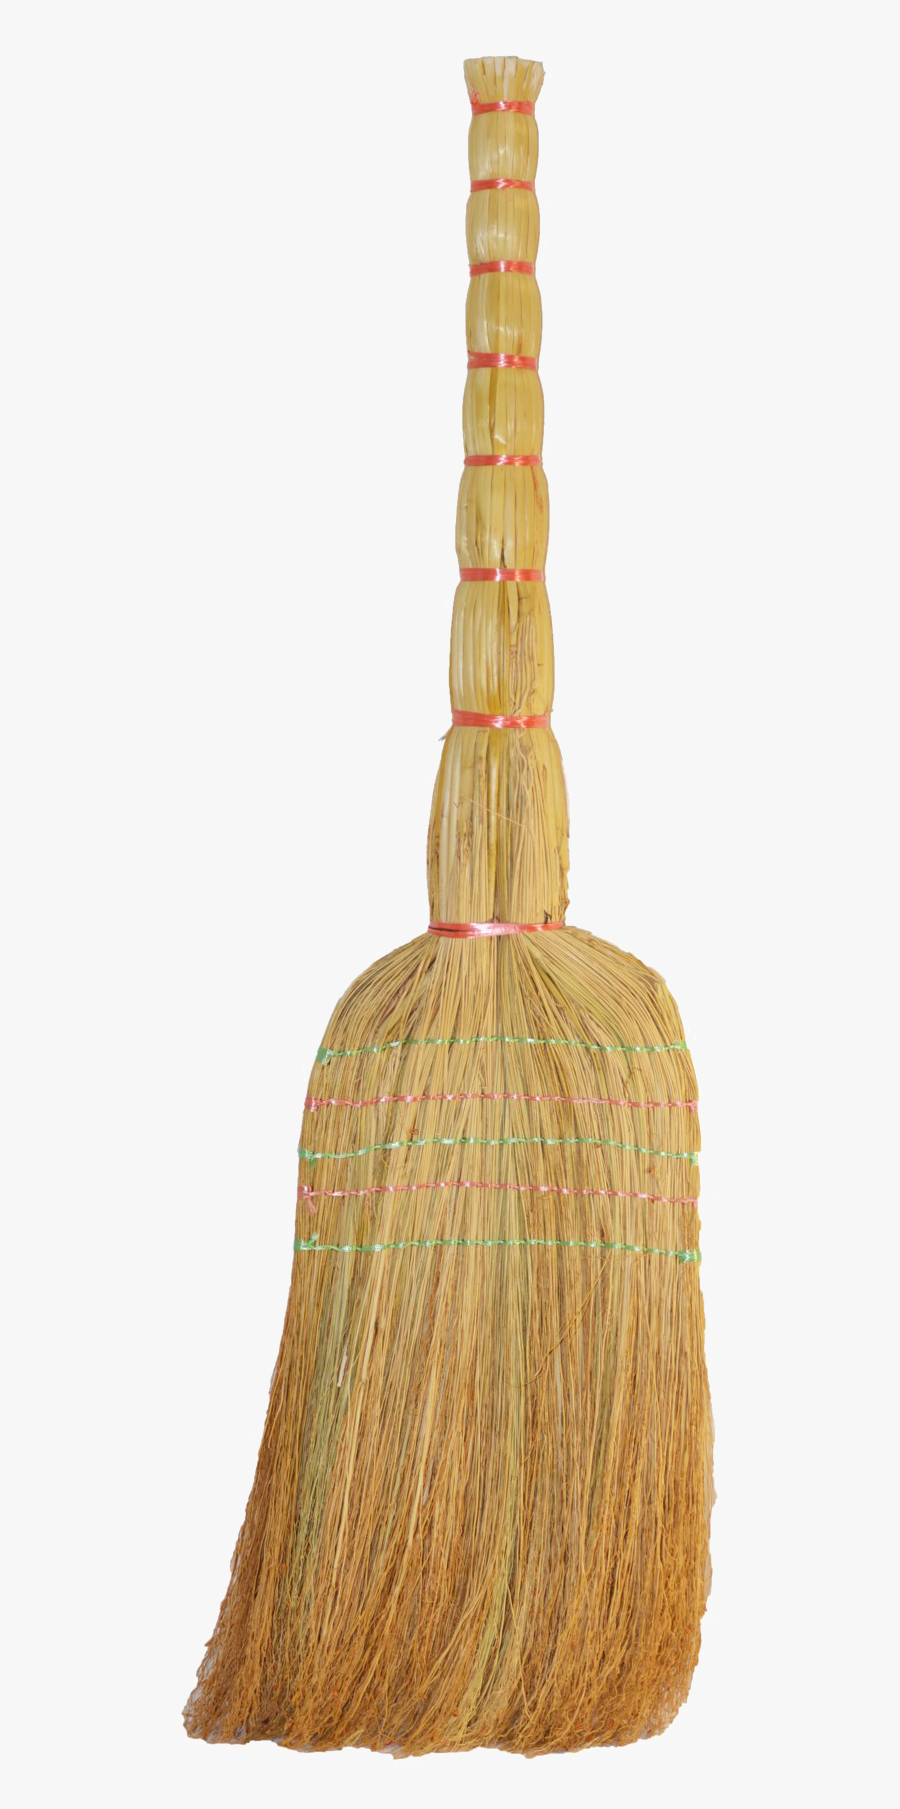 Broom Png Transparent Background - Png Indian Broom, Transparent Clipart